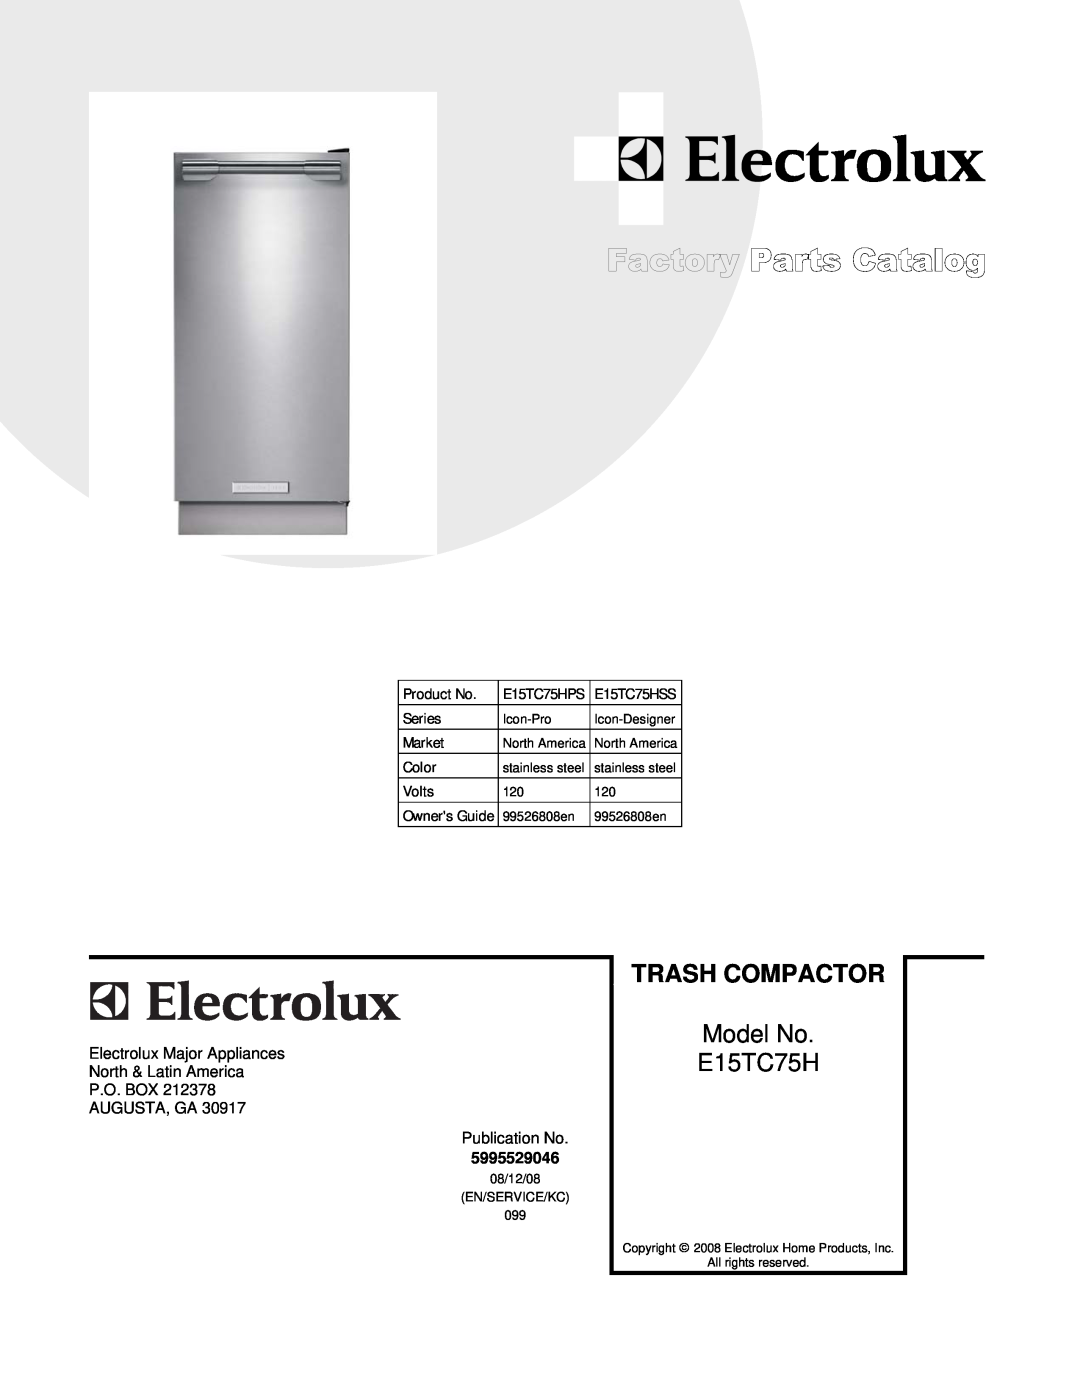 Electrolux manual Trash Compactor, Model No, Product No, E15TC75HPS, E15TC75HSS, Series, Market, Color, Volts 